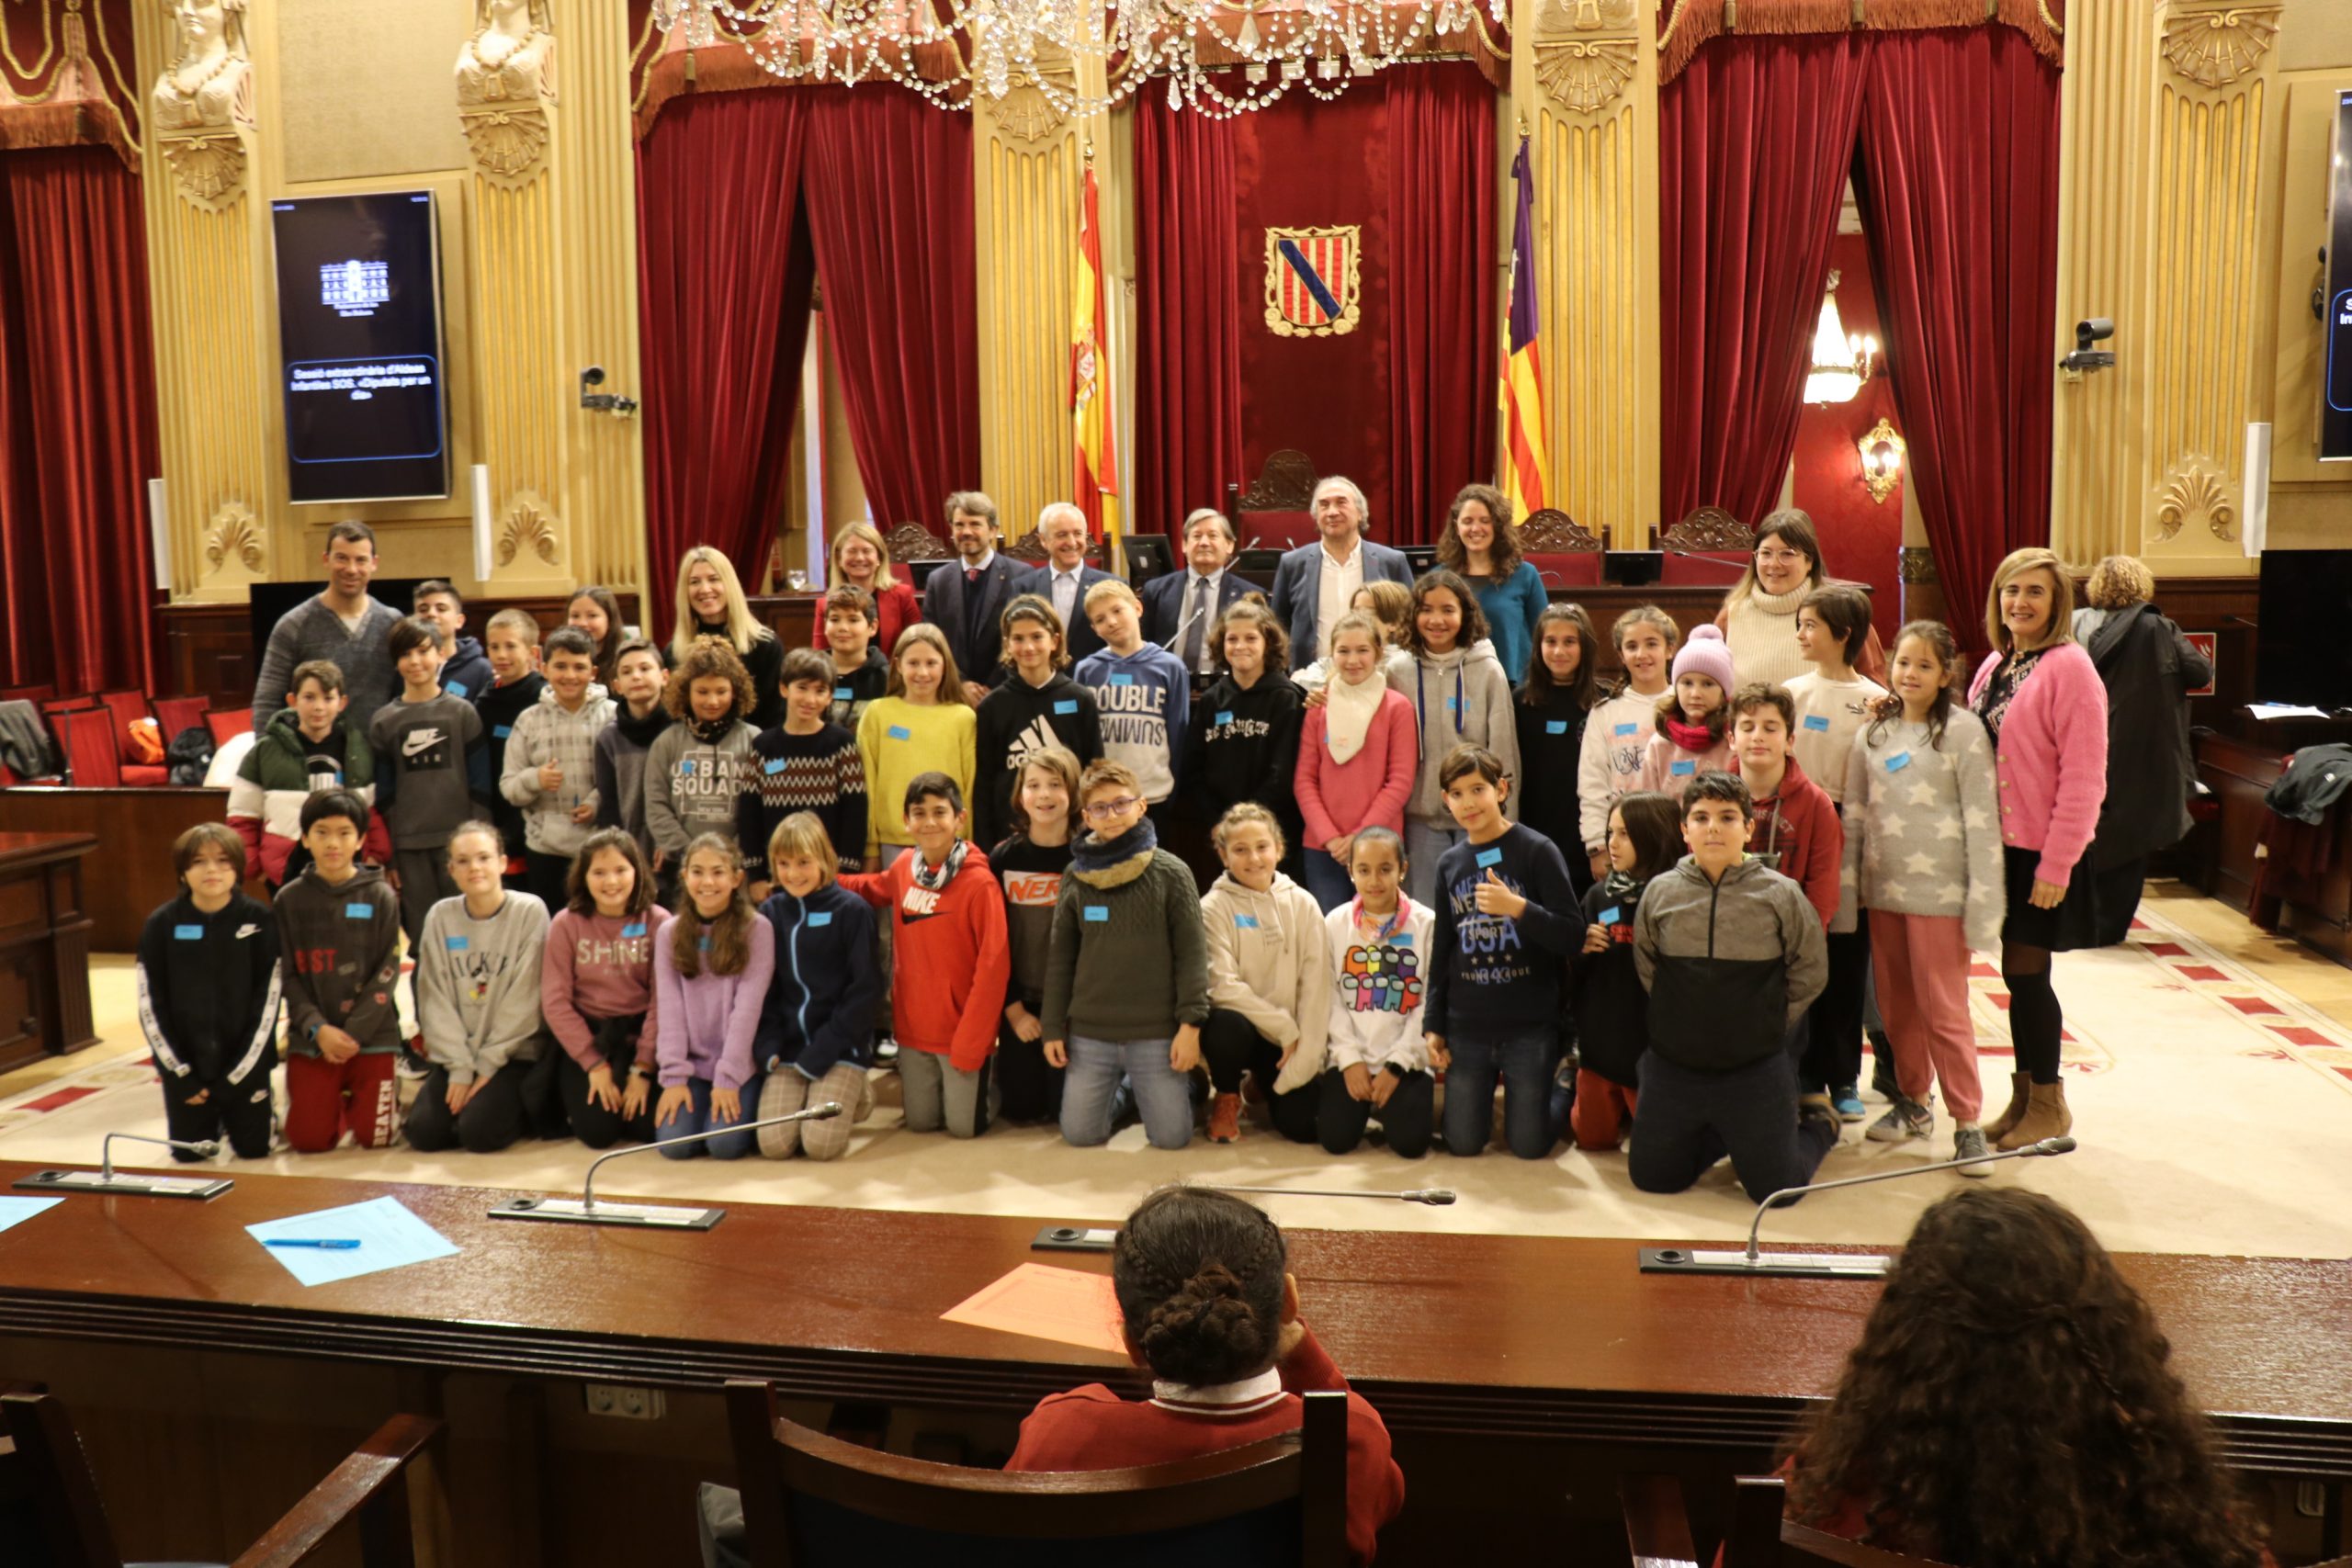 Els alumnes voten en el Parlament Balear lluitar contra el canvi climàtic i fomentar l'educació universal i gratuïta